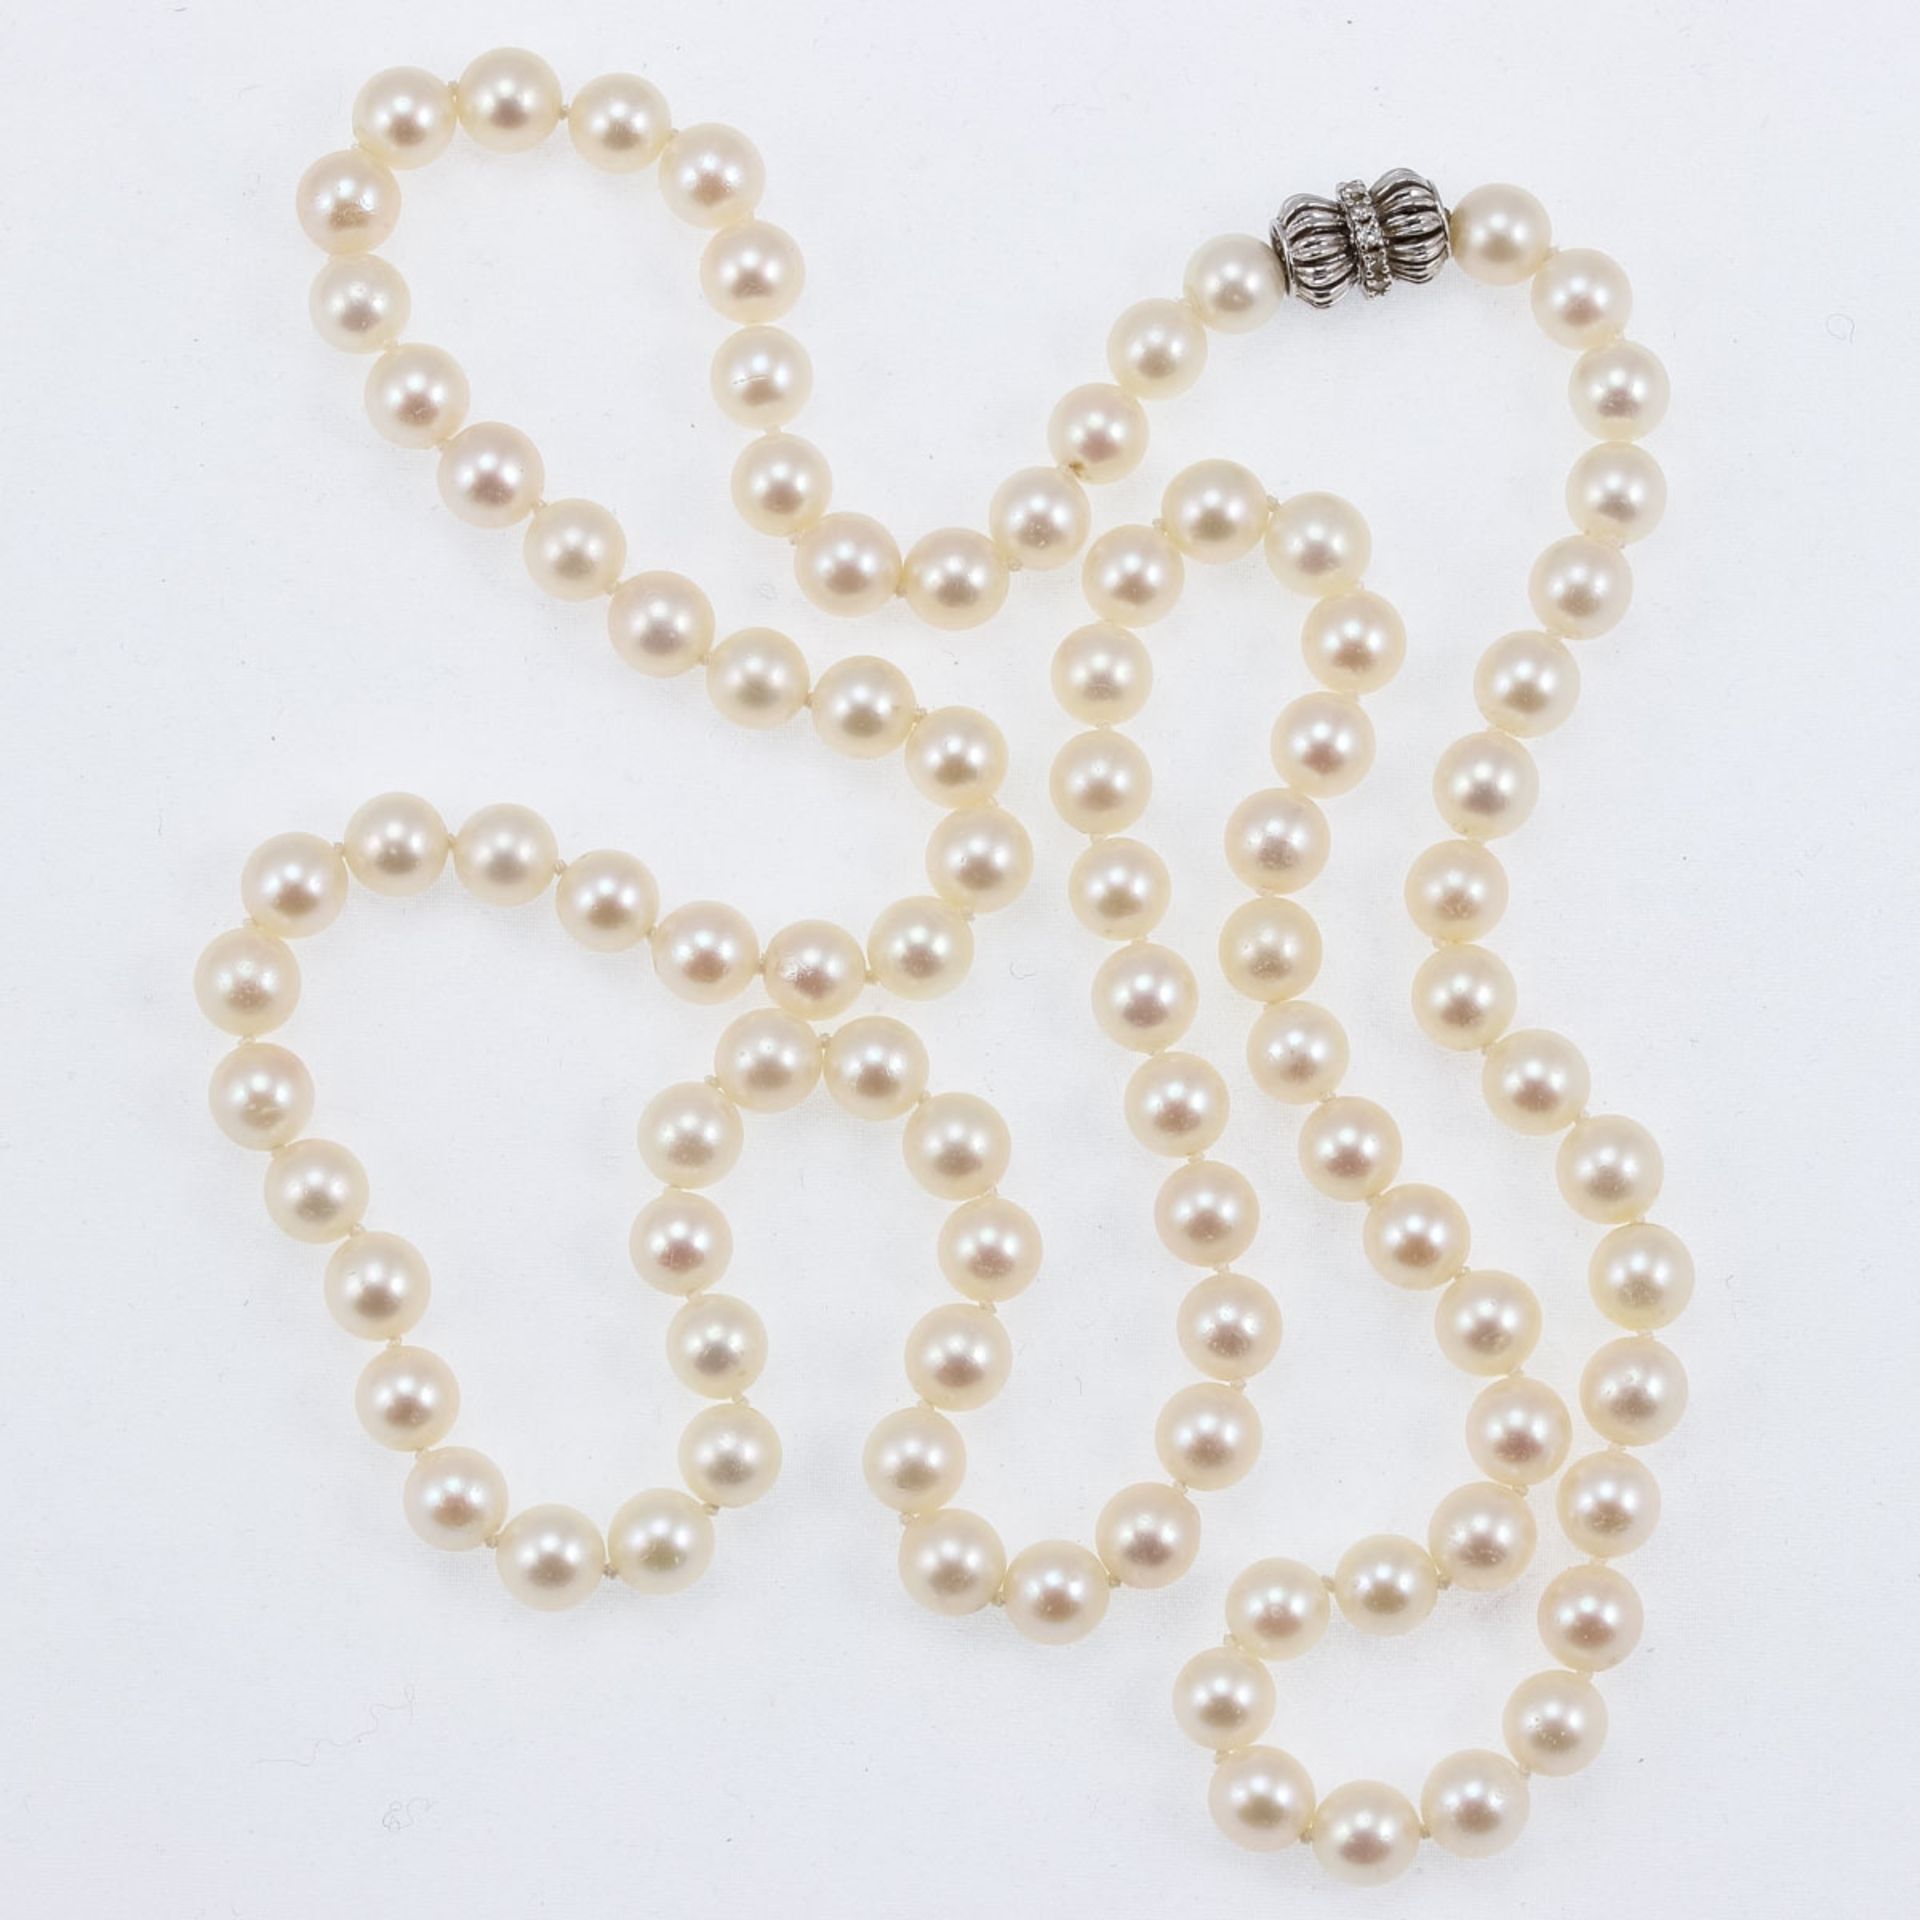 Langes Perlencollier einreihig mit Weißgold-Schließe 585/- Weißgold, gestemp. Gewicht: 94,